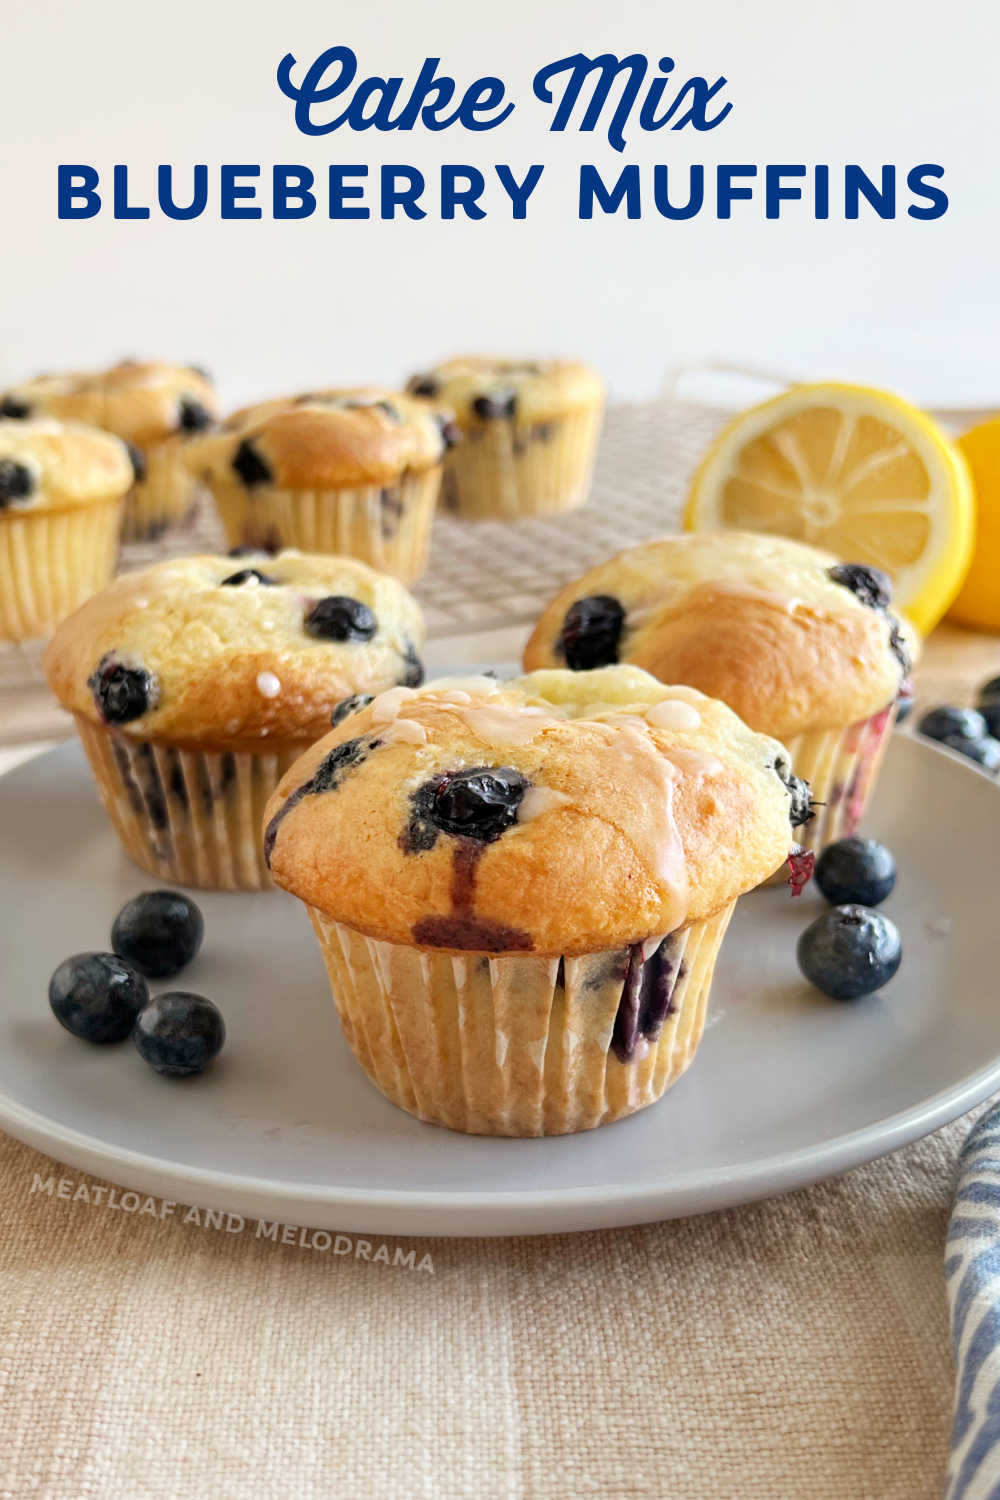 Φτιάξτε Cake Mix Blueberry Muffins με ένα κουτί μείγμα κέικ και φρέσκα βατόμουρα και μερικά άλλα συστατικά.  Μια εύκολη συνταγή για μάφιν με μύρτιλλα που λατρεύουν όλοι.  Αυτά τα νόστιμα μάφιν είναι τέλεια για ένα γρήγορο πρωινό ή σνακ!  μέσω @meamel